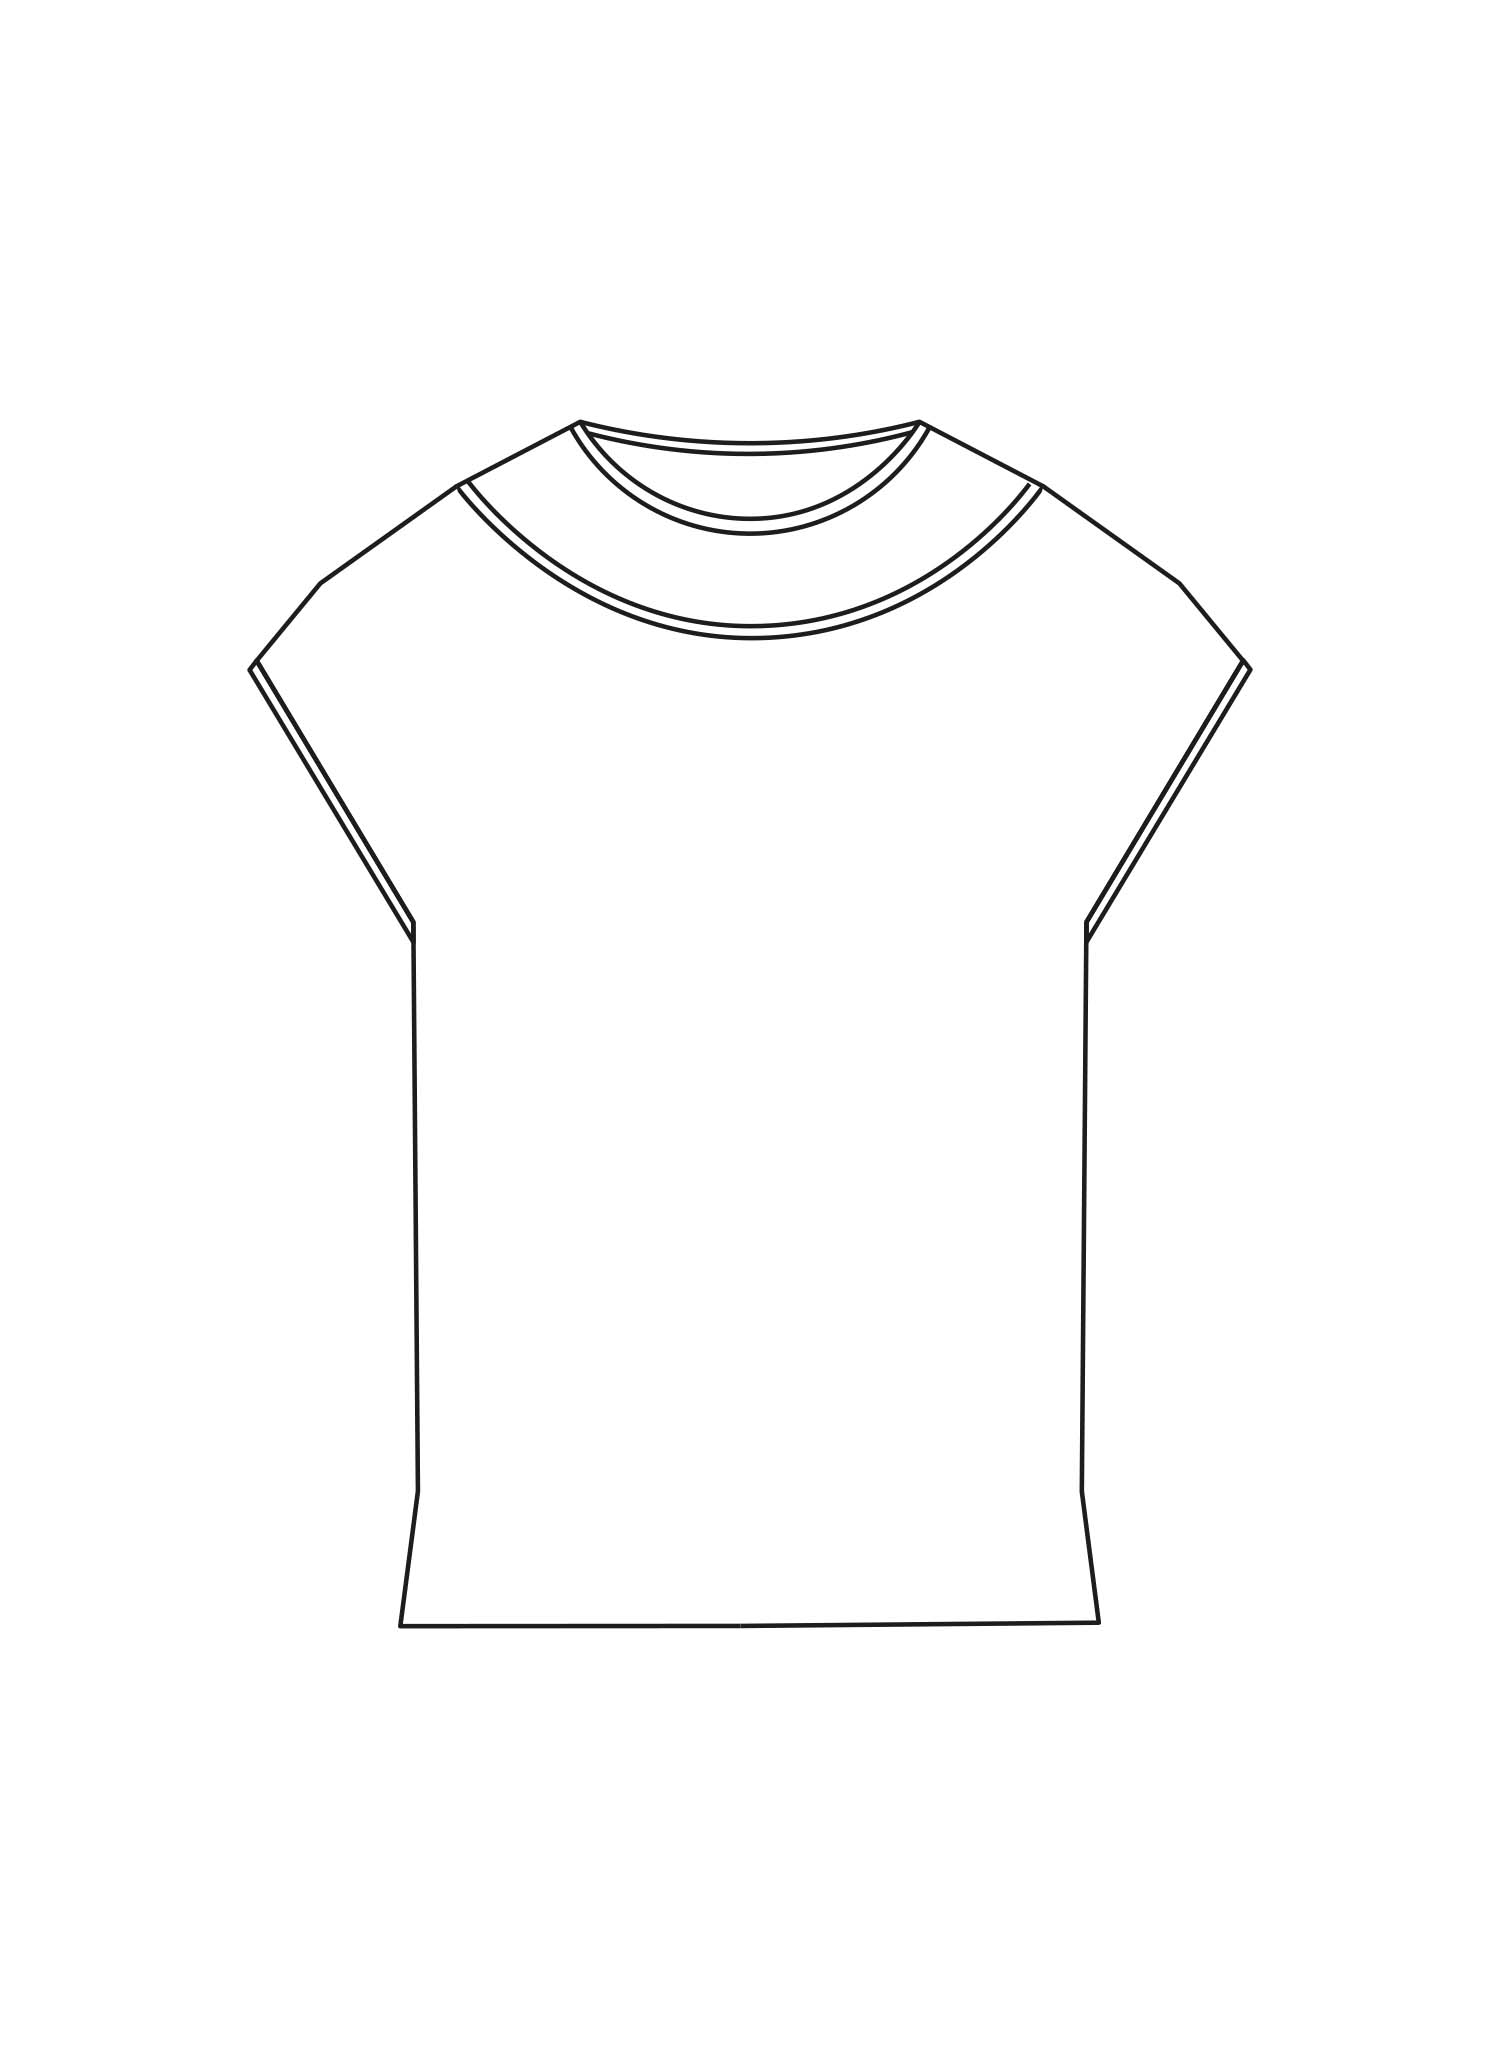 Drawing of Alberti T-shirt.